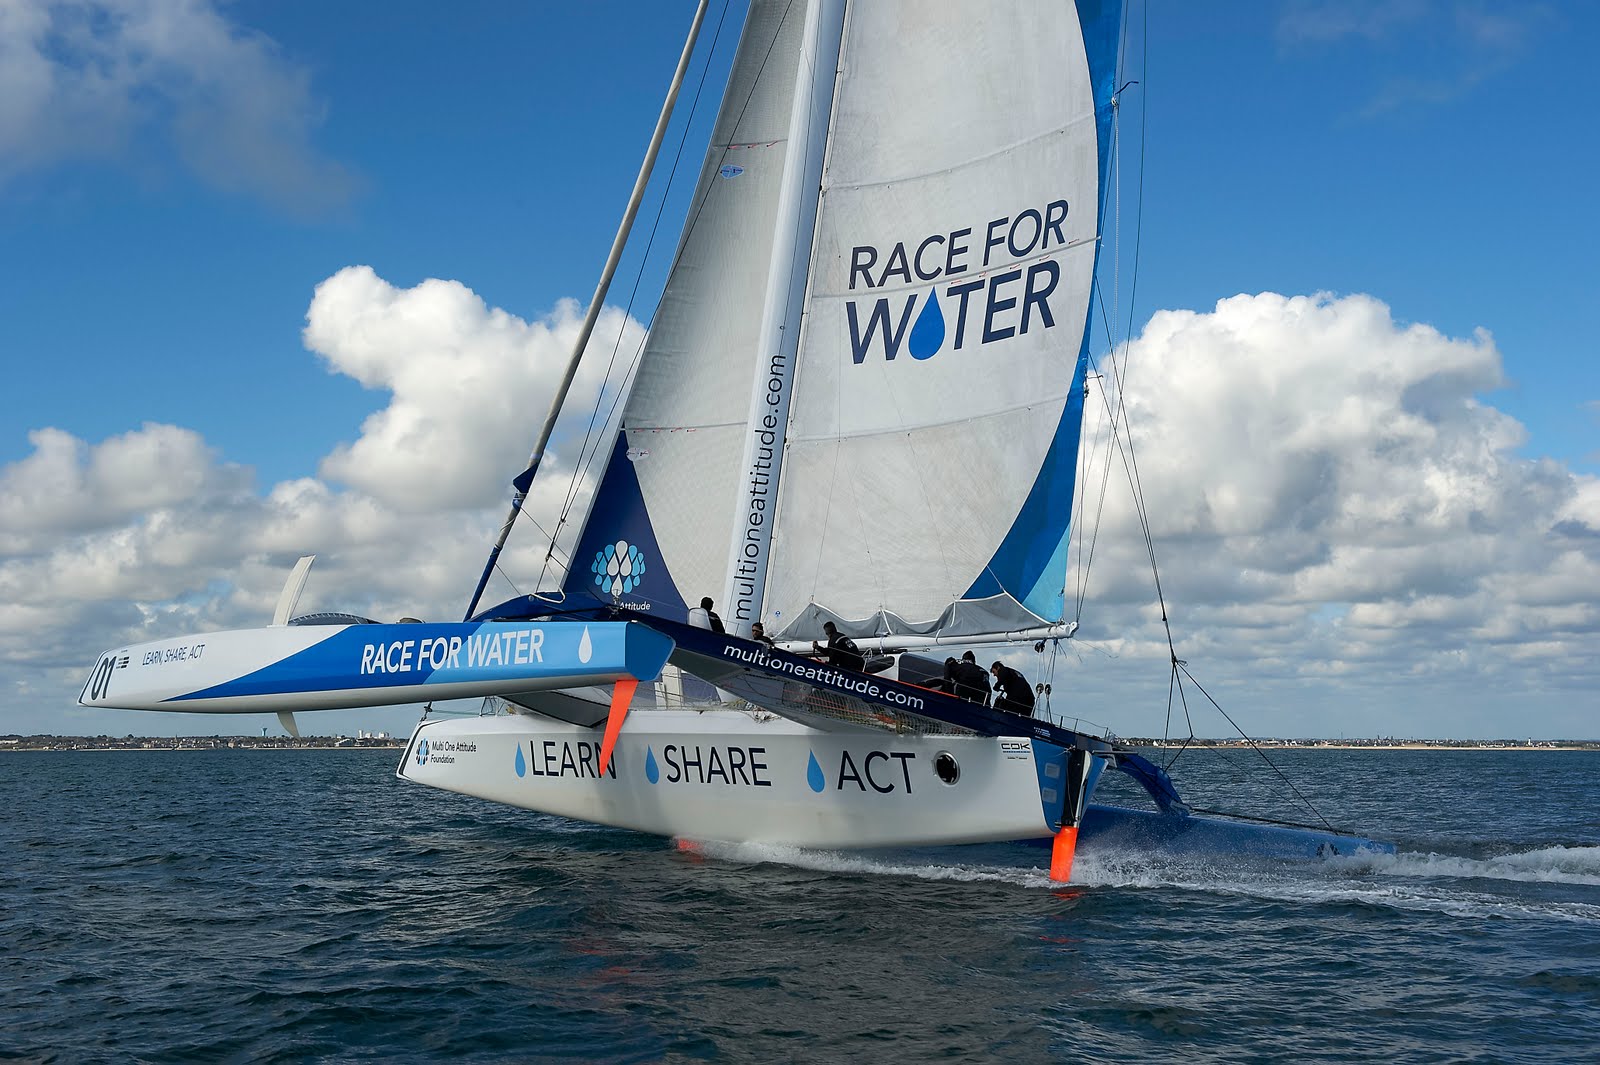 Race For Water som også kunne ses under Kieler ugen. Se video i bunden af artikel